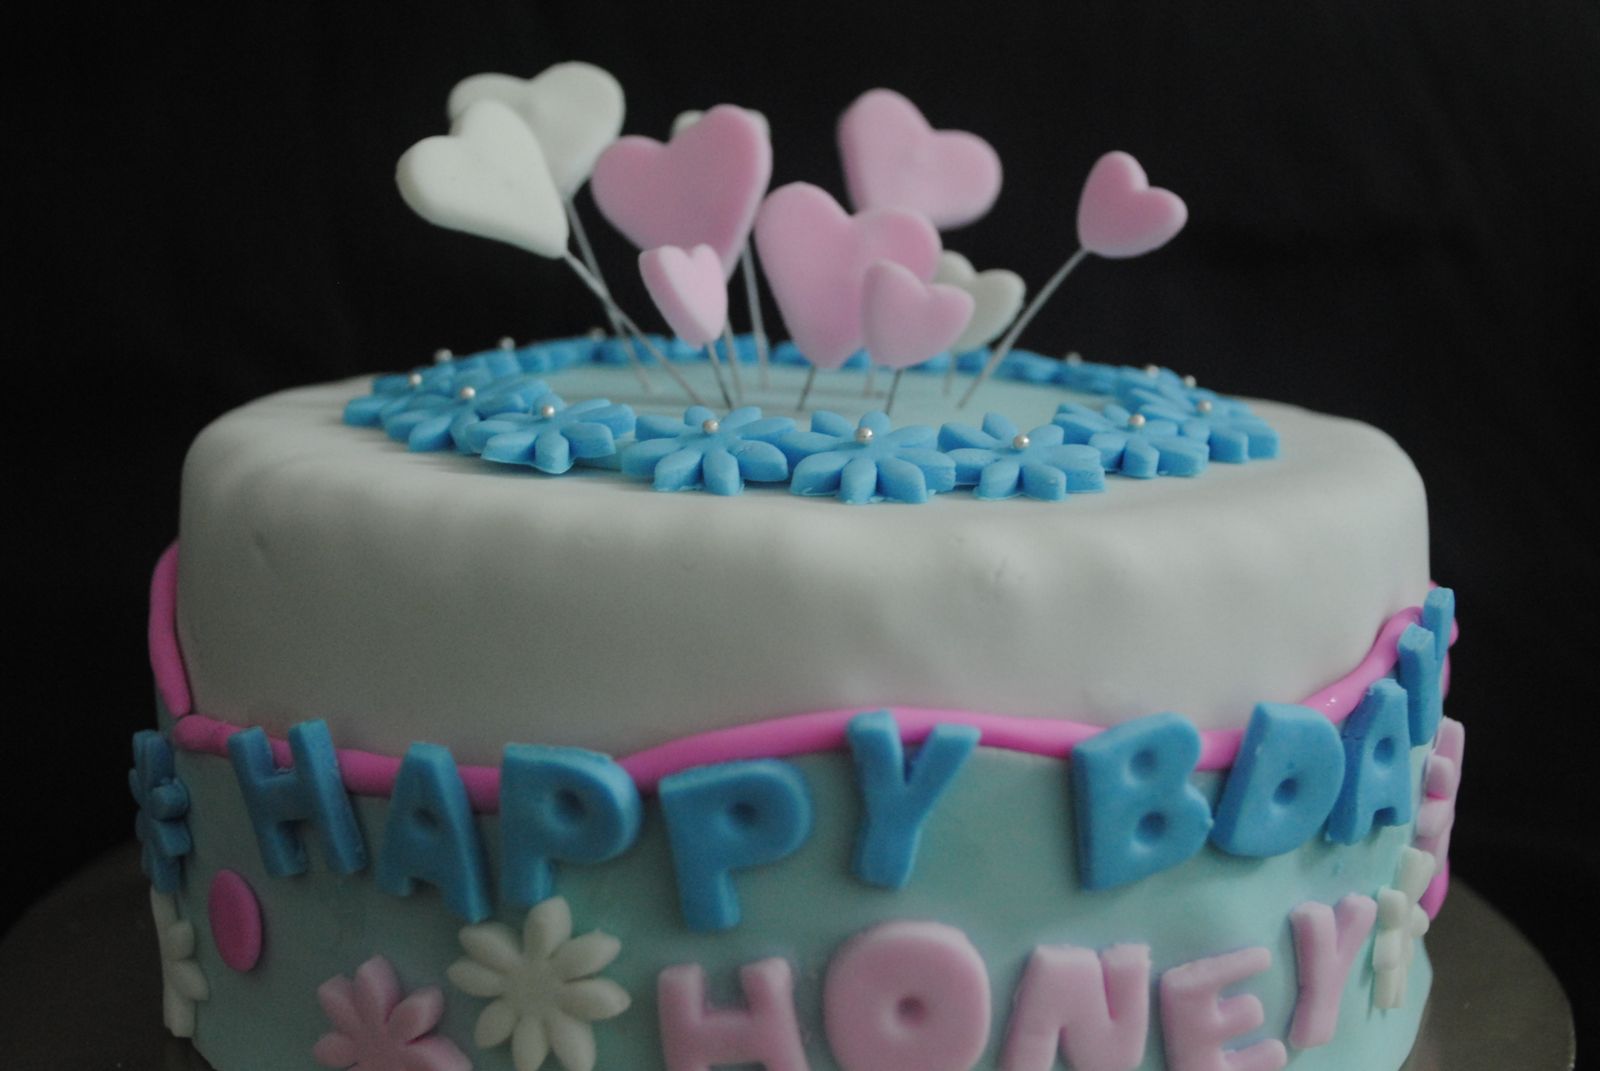 Happy Birthday Cake For Boyfriend | www.imgkid.com - The ...